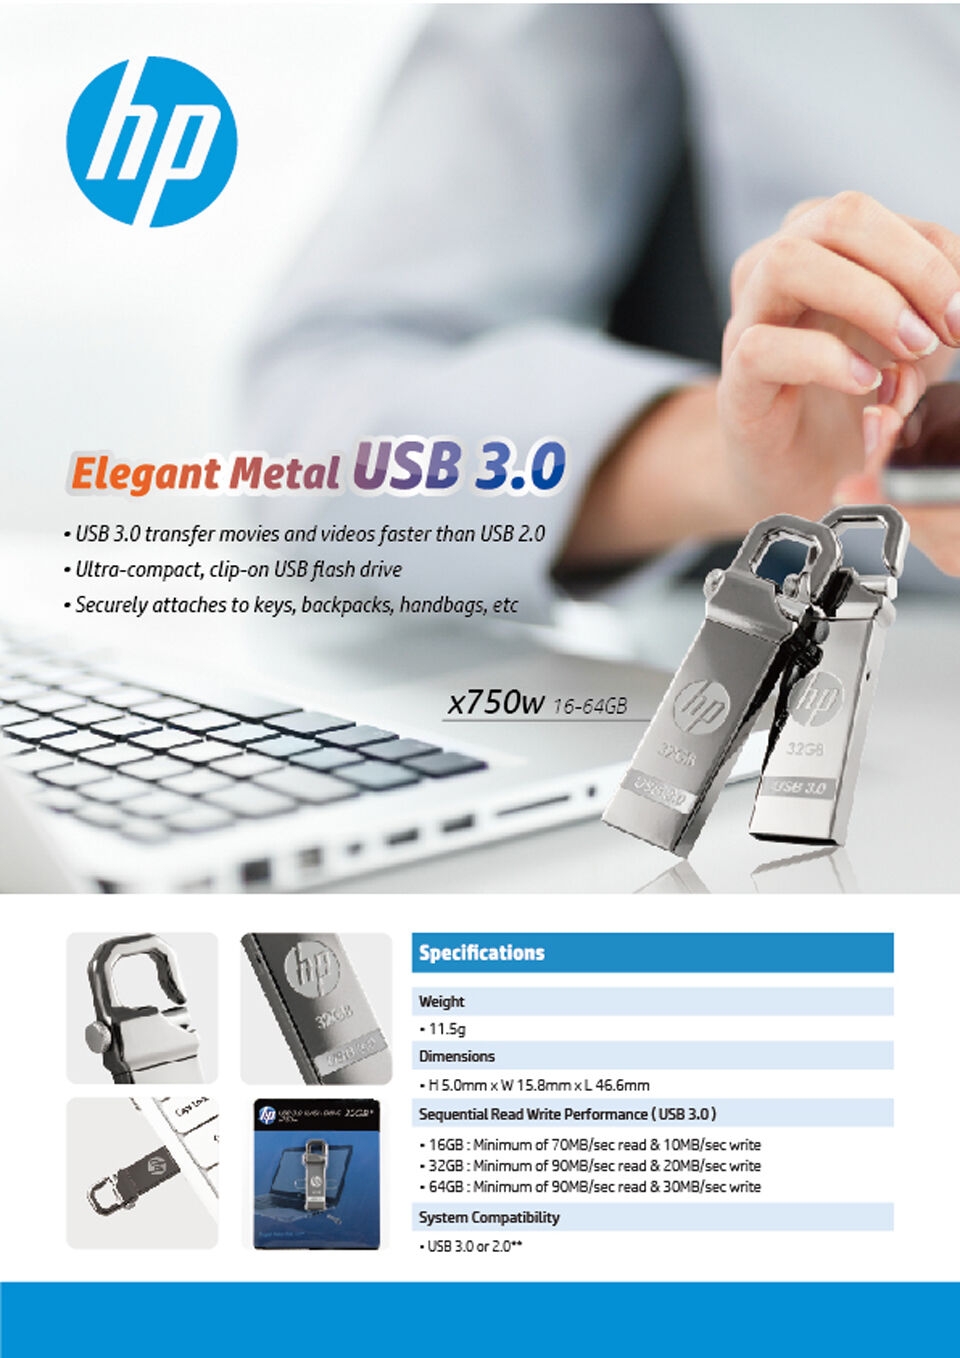 HP x750w USB Flash Drive USB 3.0  32GB 16GB  High Speed Elegant Metal USB Stick 16gb Pendrive Flash Drive Customized Logo Pen drive   (5)